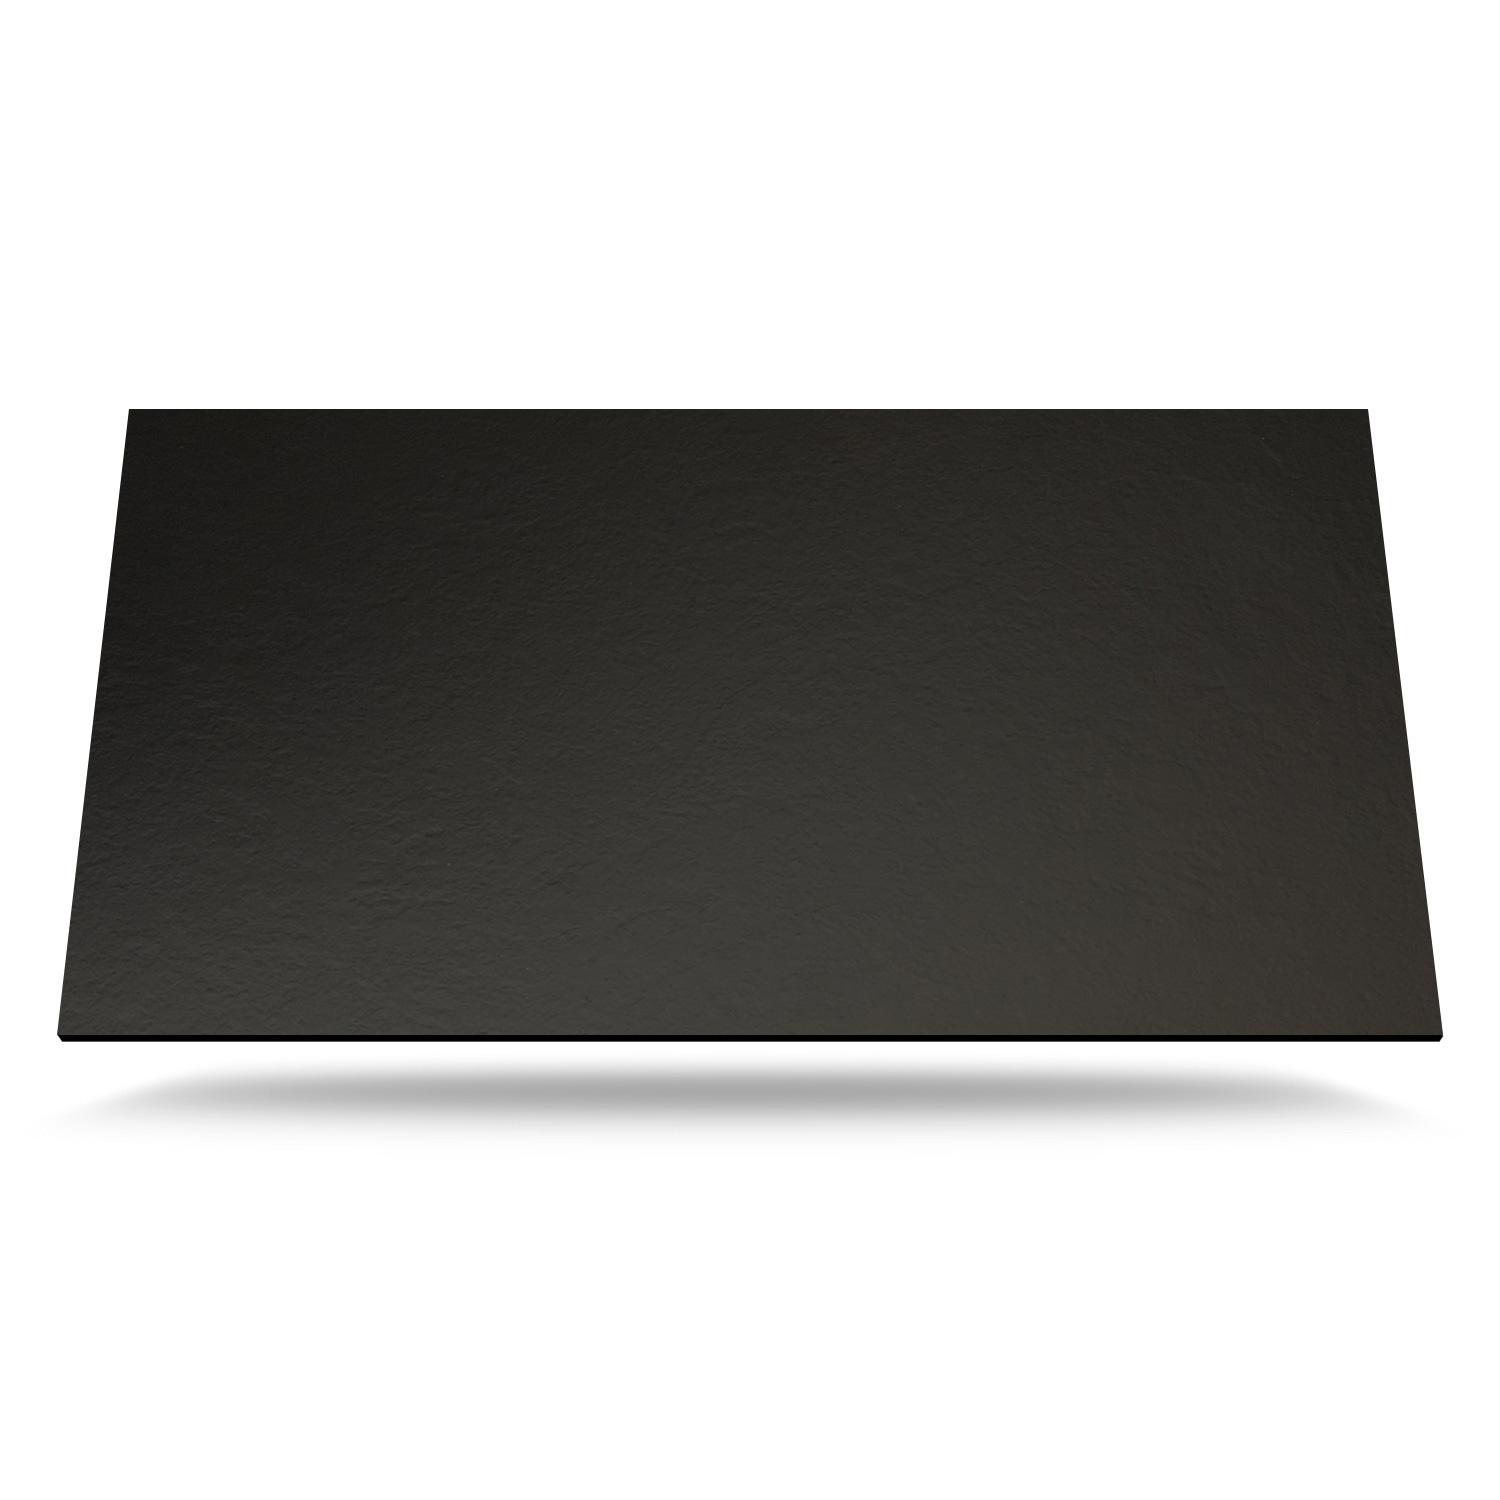 FM-0080 SX Slate sort m/sort kerne Kompaktlaminat bordplade på mål